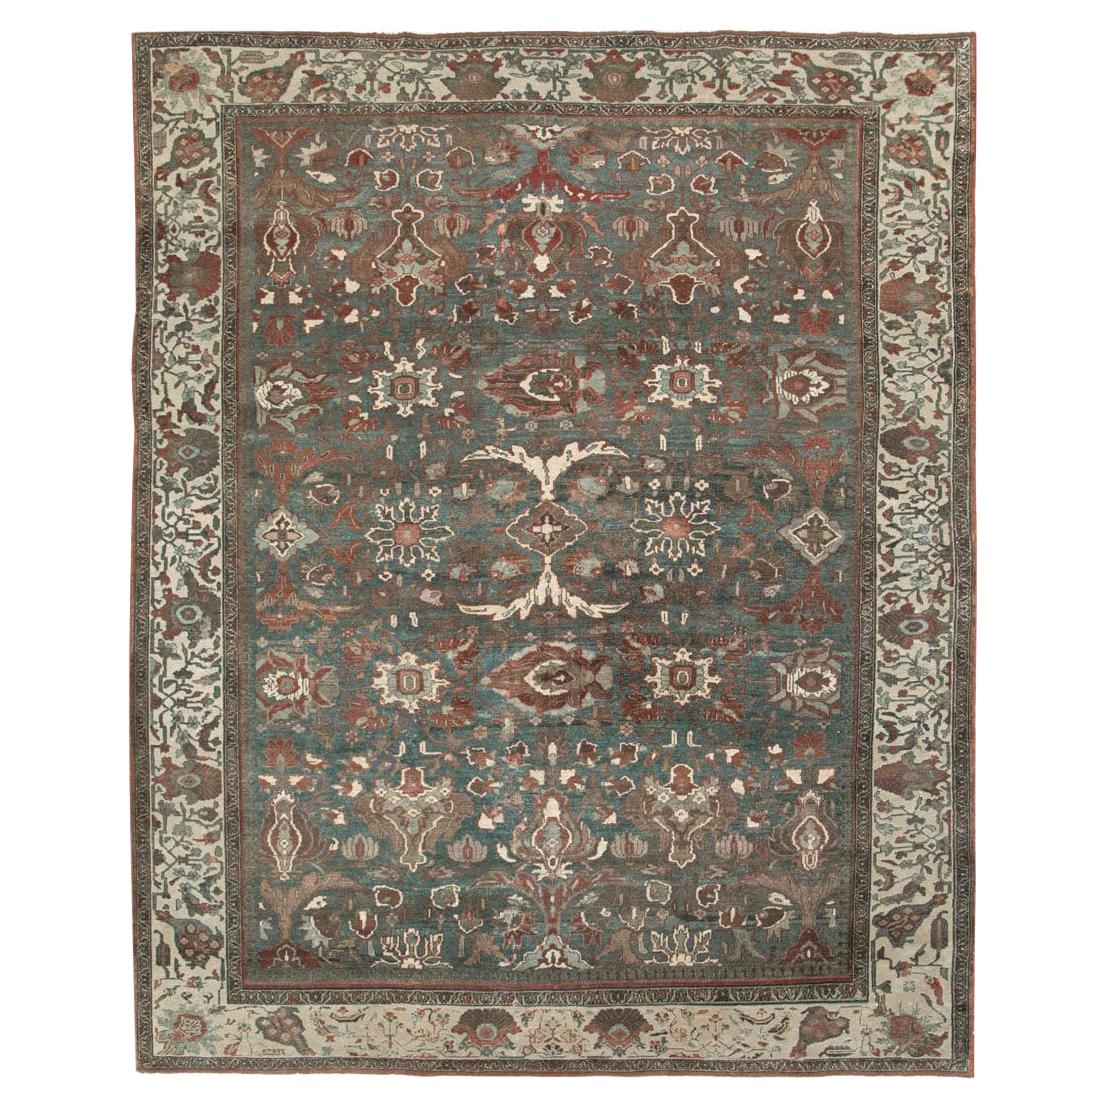 Handgefertigter persischer Malayer-Teppich in Zimmergröße aus dem frühen 20. Jahrhundert